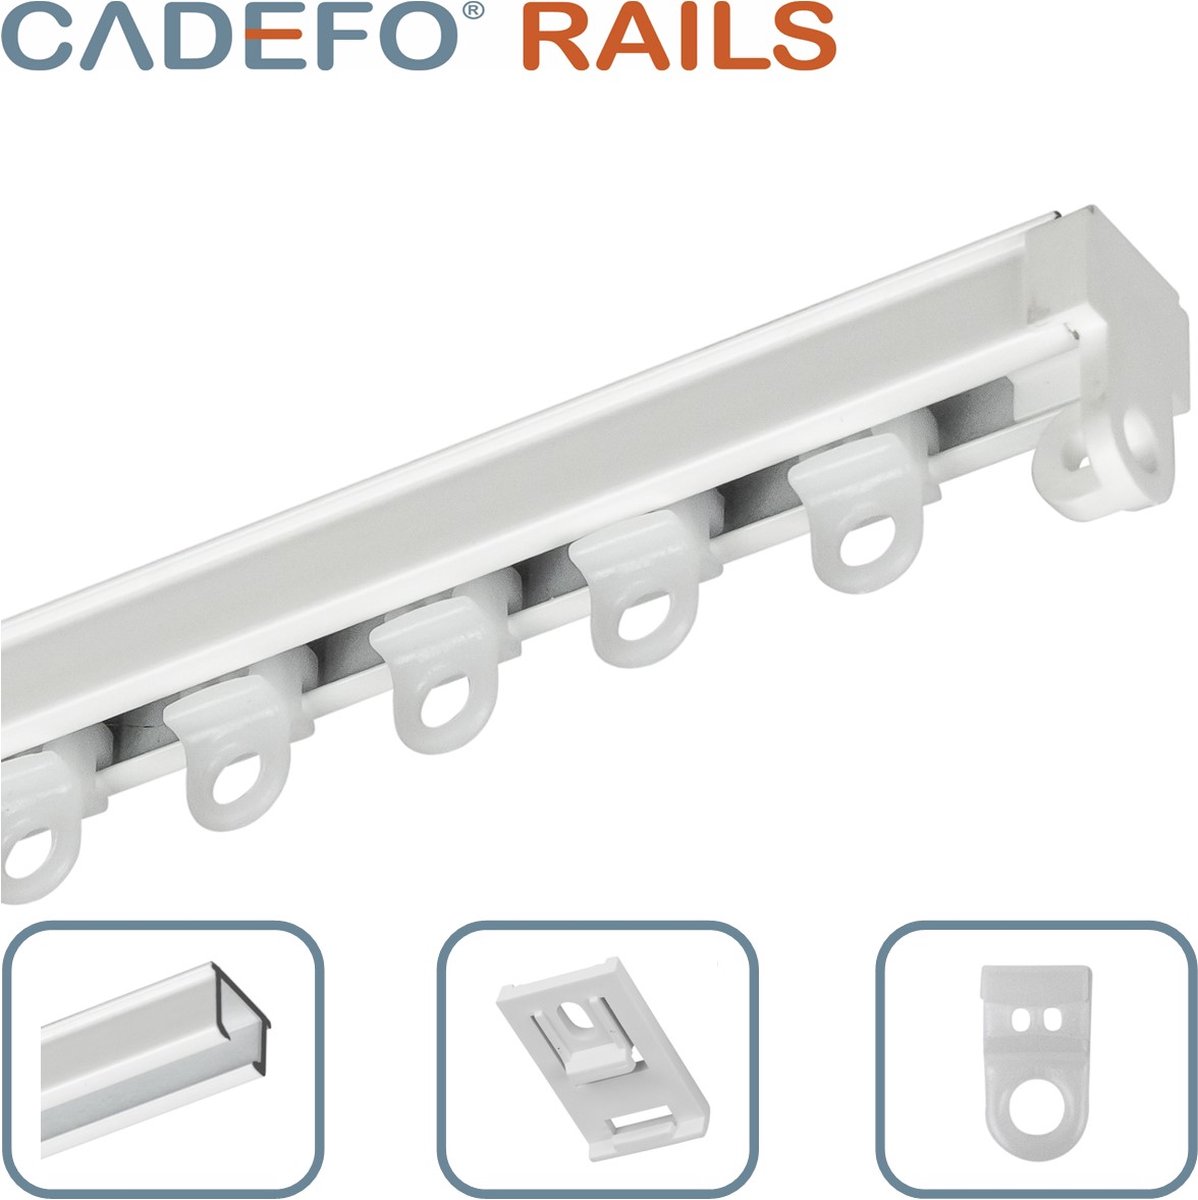 CADEFO RAILS (401 - 450 cm) Gordijnrails - Compleet op maat! - UIT 1 STUK - Leverbaar tot 6 meter - Plafondbevestiging - Lengte 414 cm